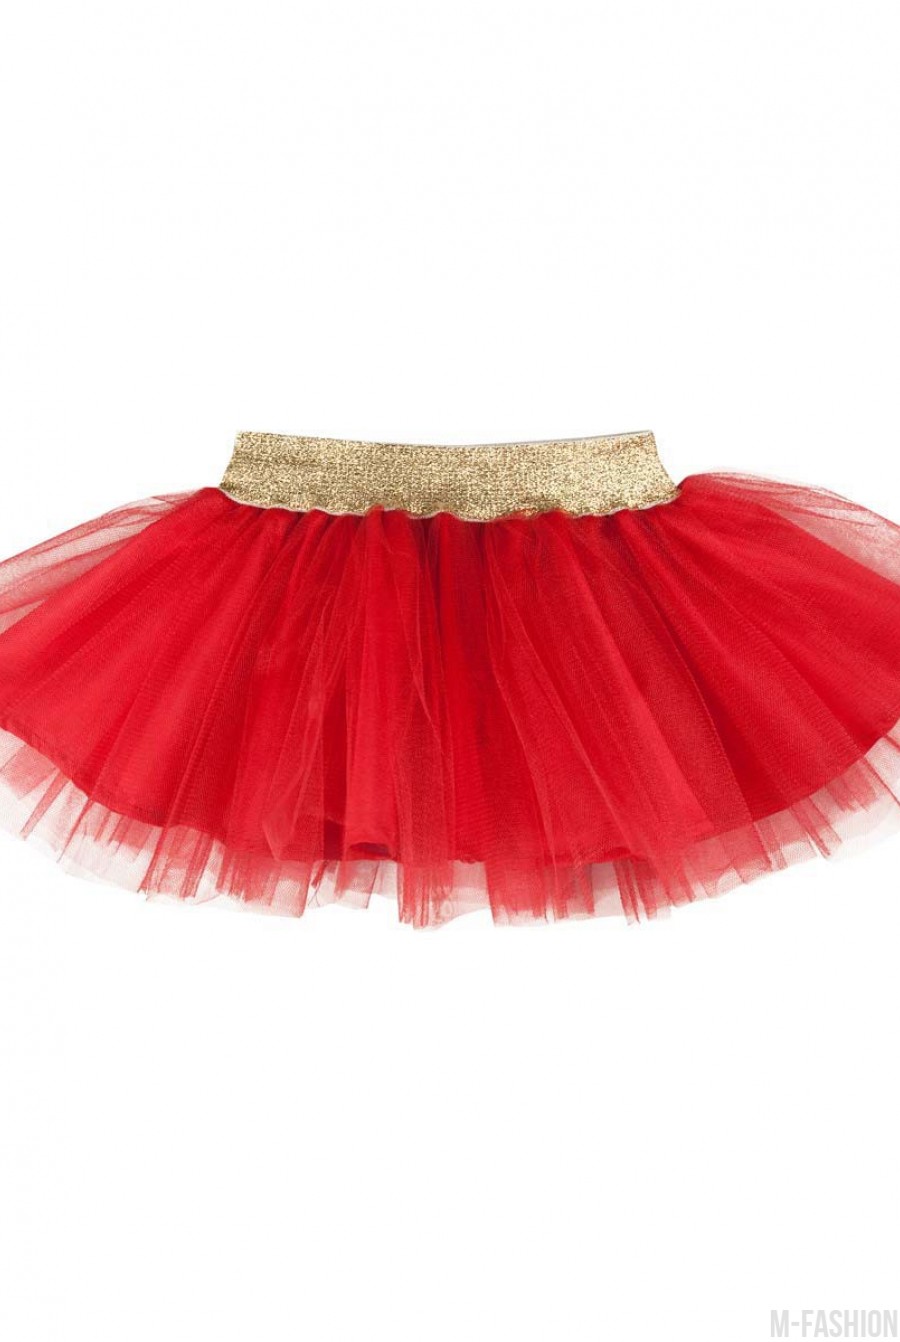 Красная многослойная юбка из тафты и фатина с золотым поясом - Фото 1